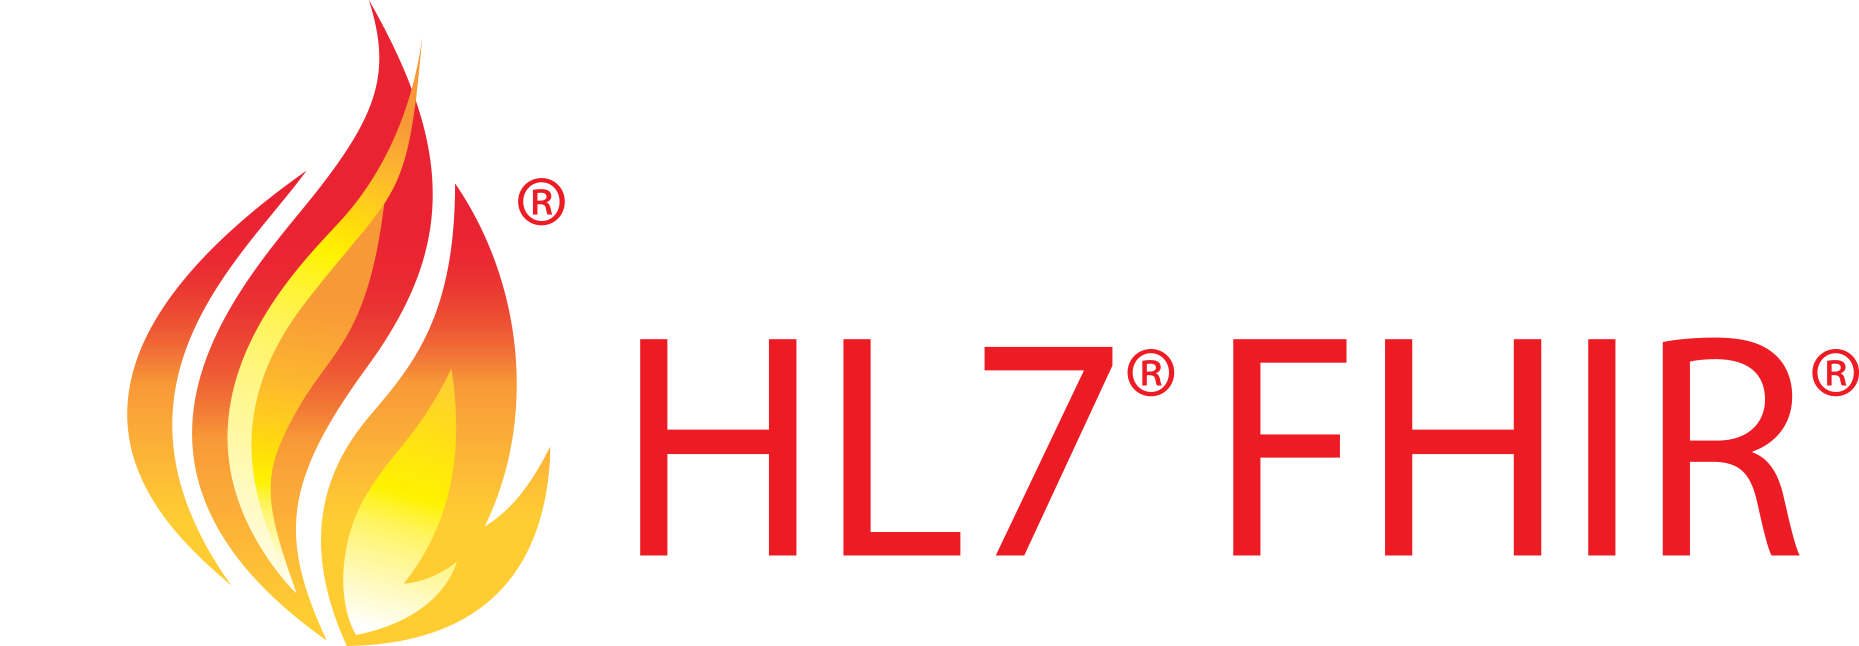 HL7_FHIR_logo